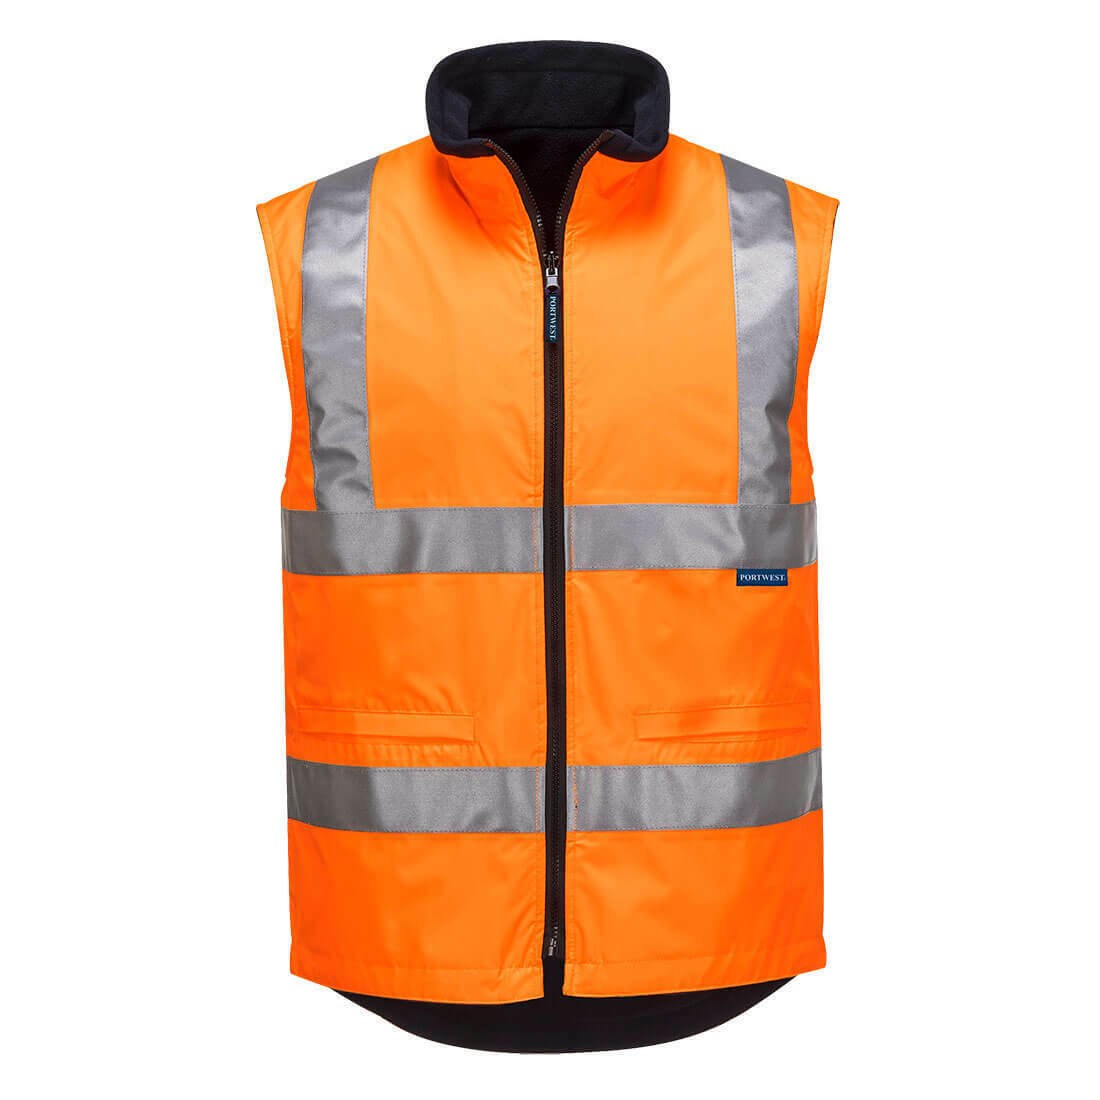 Portwest Mens Hi-Vis Polar Fleece Reversible Vest Reflective Work Safety MV214